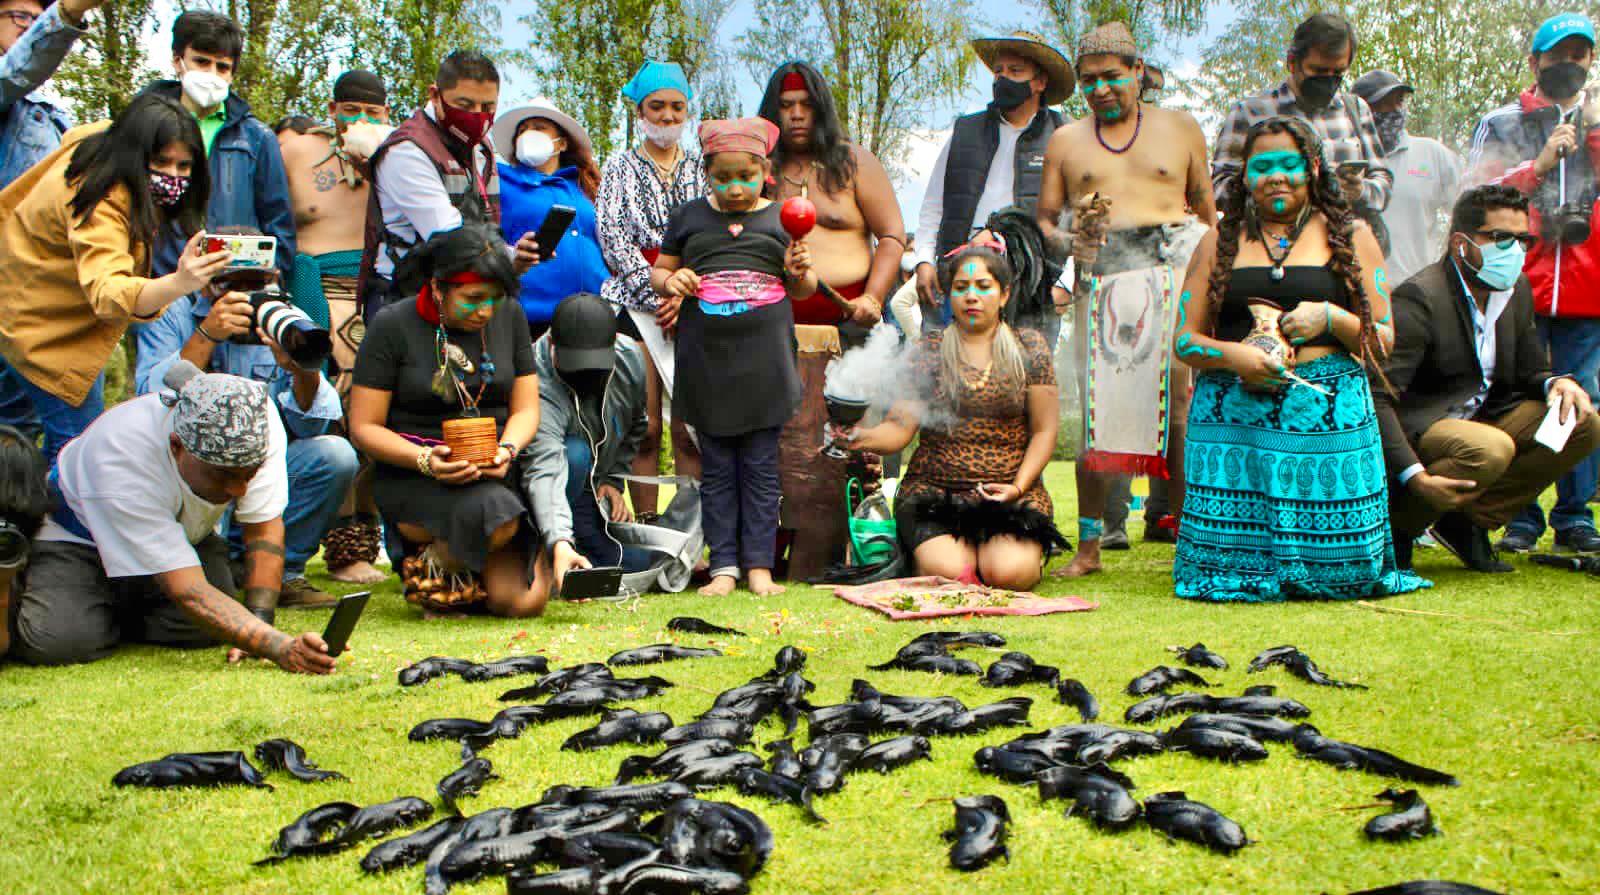 Contaminación y depredadores: ajolotes liberados en Xochimilco podrían morir, advierten expertos